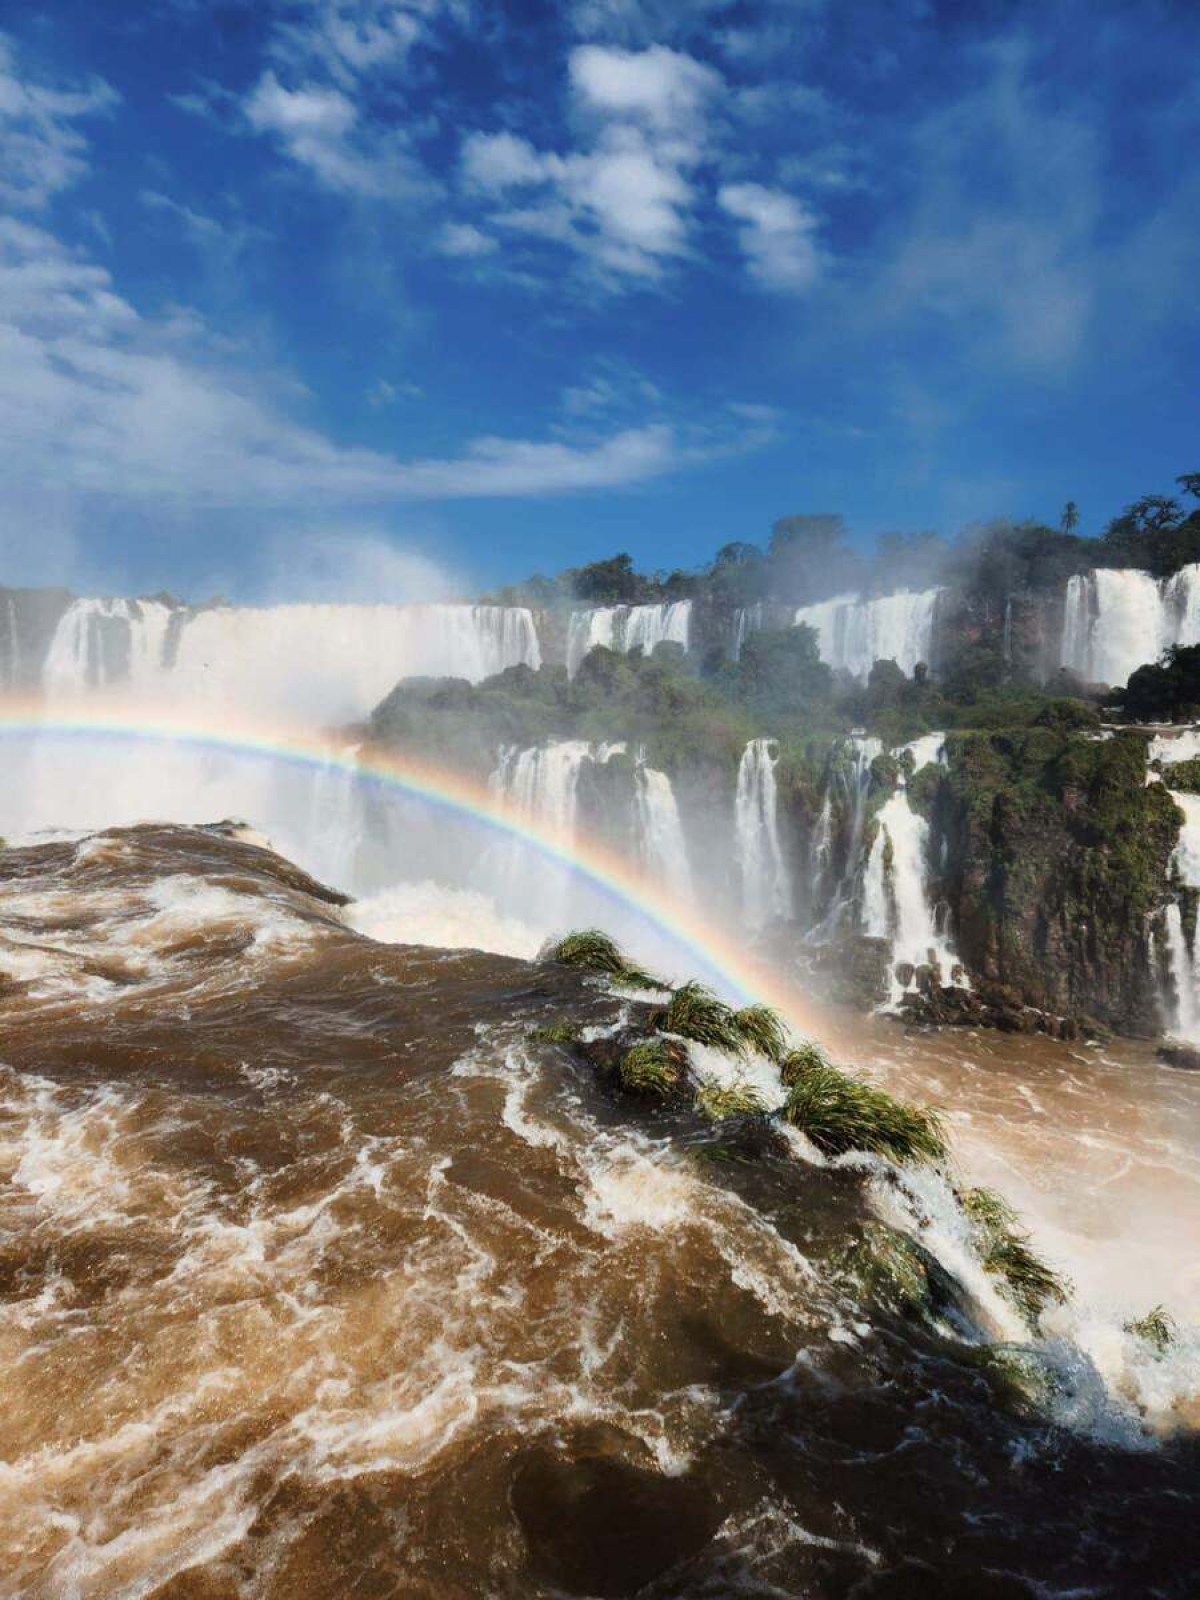  Cataratas do Iguaçu, em Foz do Iguaçu.